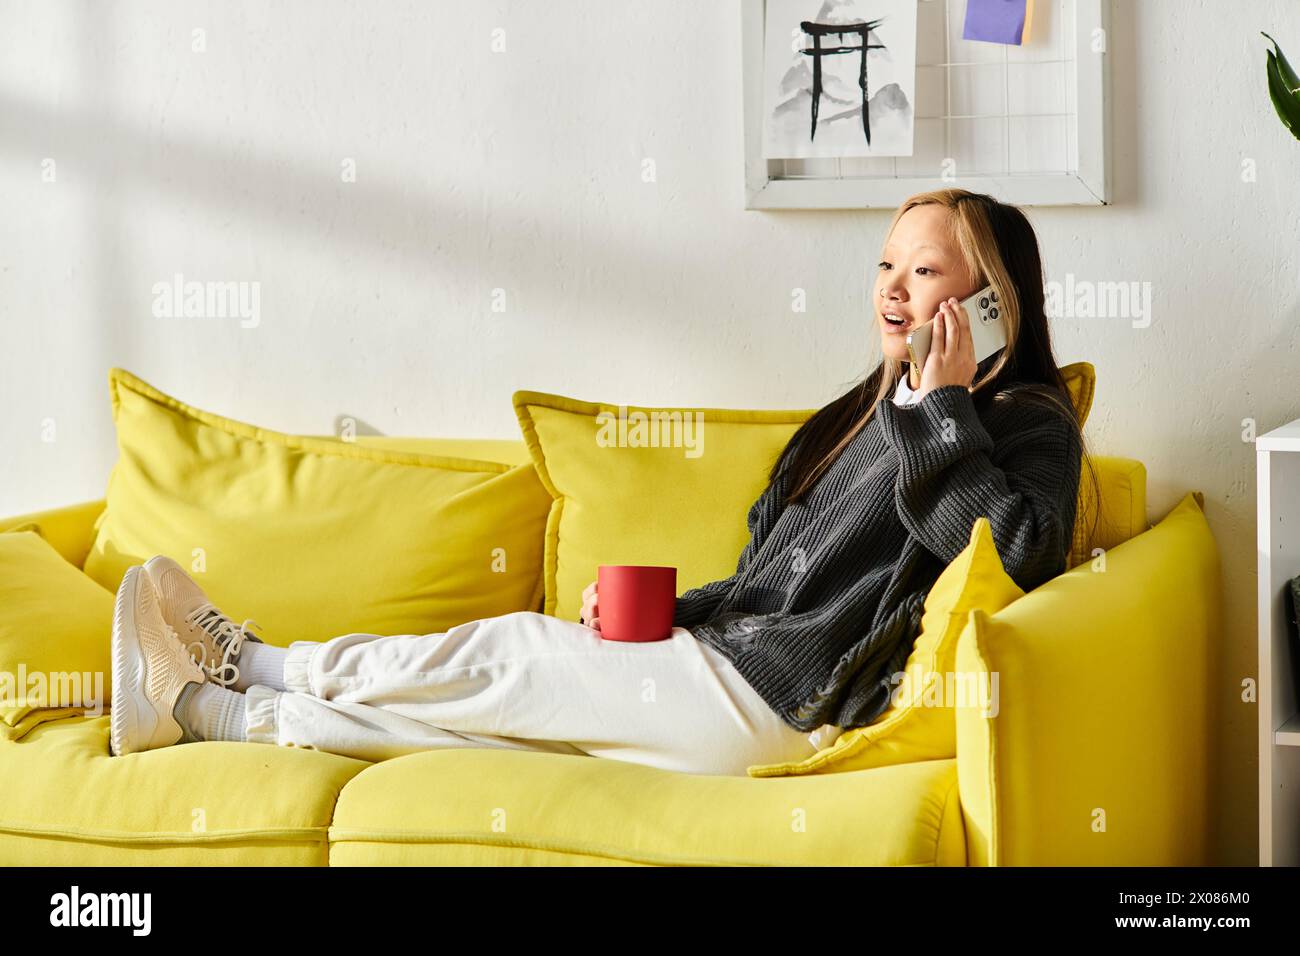 Eine junge asiatische Frau sitzt bequem auf einer gelben Couch und führt auf ihrem Handy ein lebhaftes Gespräch. Stockfoto